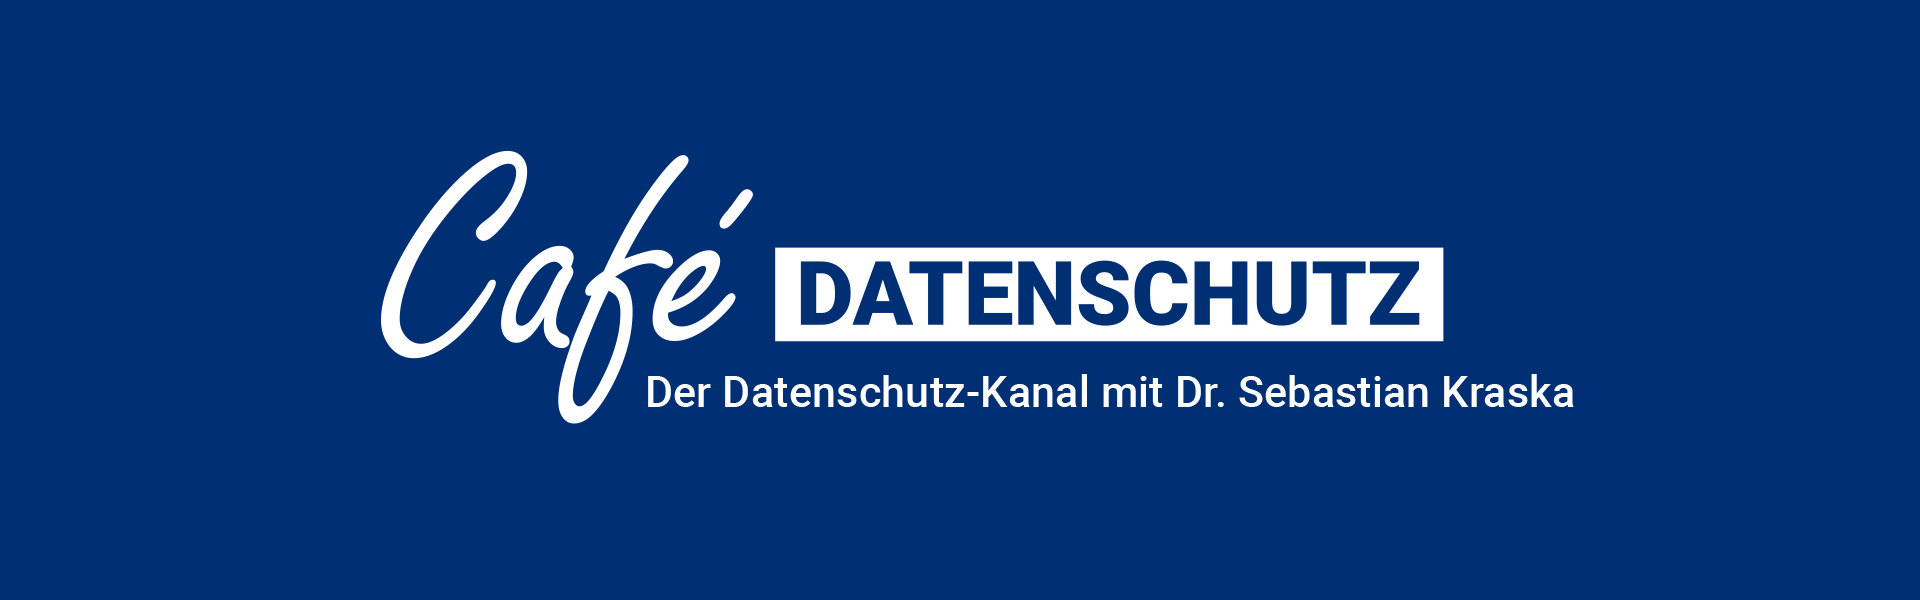 Café Datenschutz - Der Datenschutz-Kanal mit Dr. Sebastian Kraska